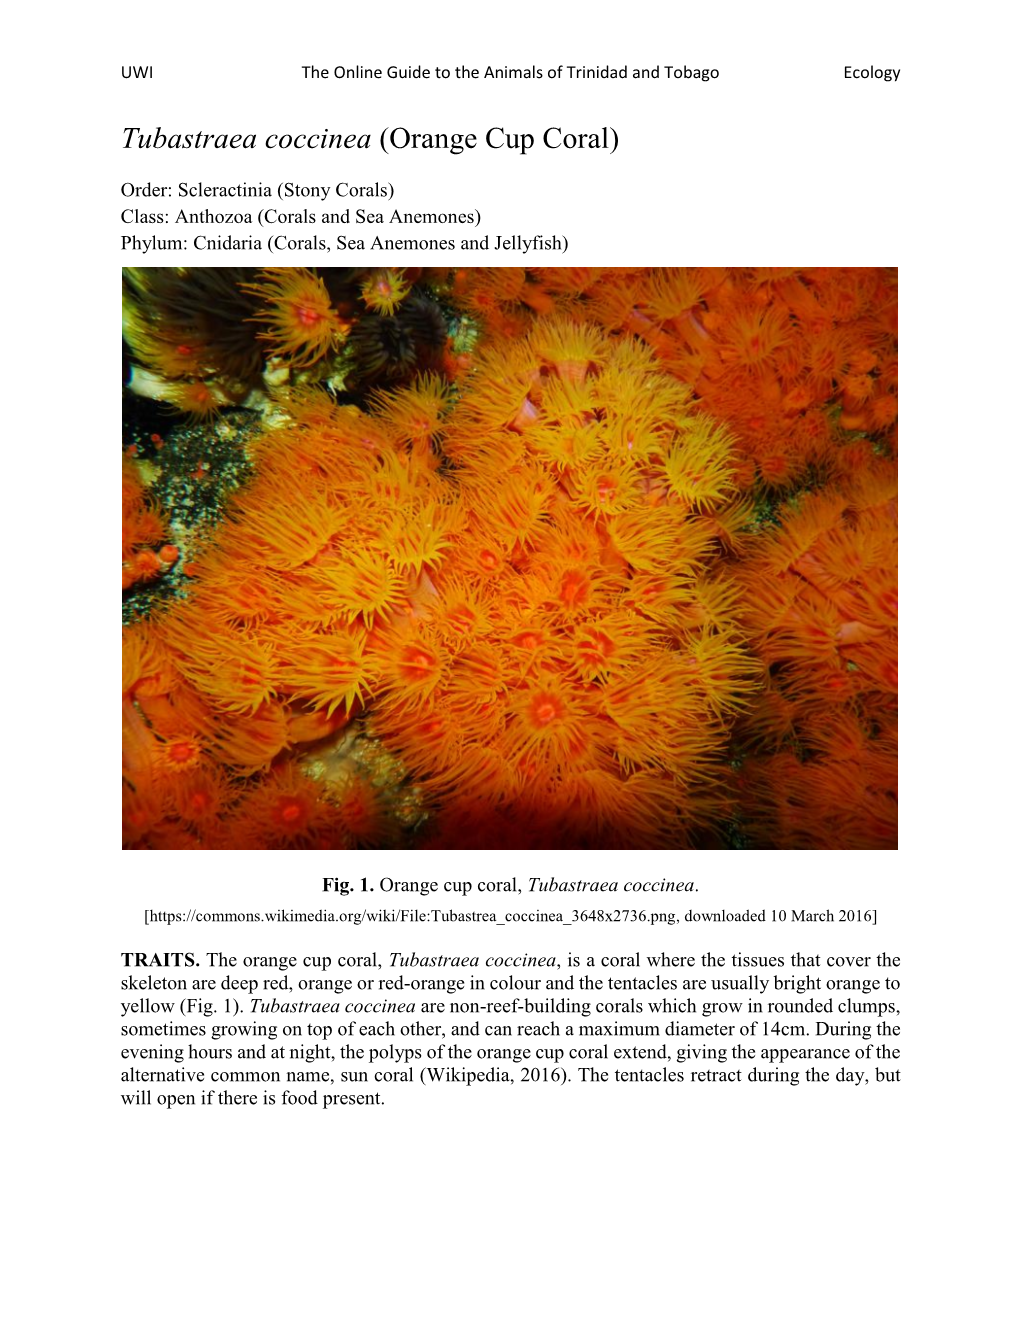 Tubastraea Coccinea (Orange Cup Coral)